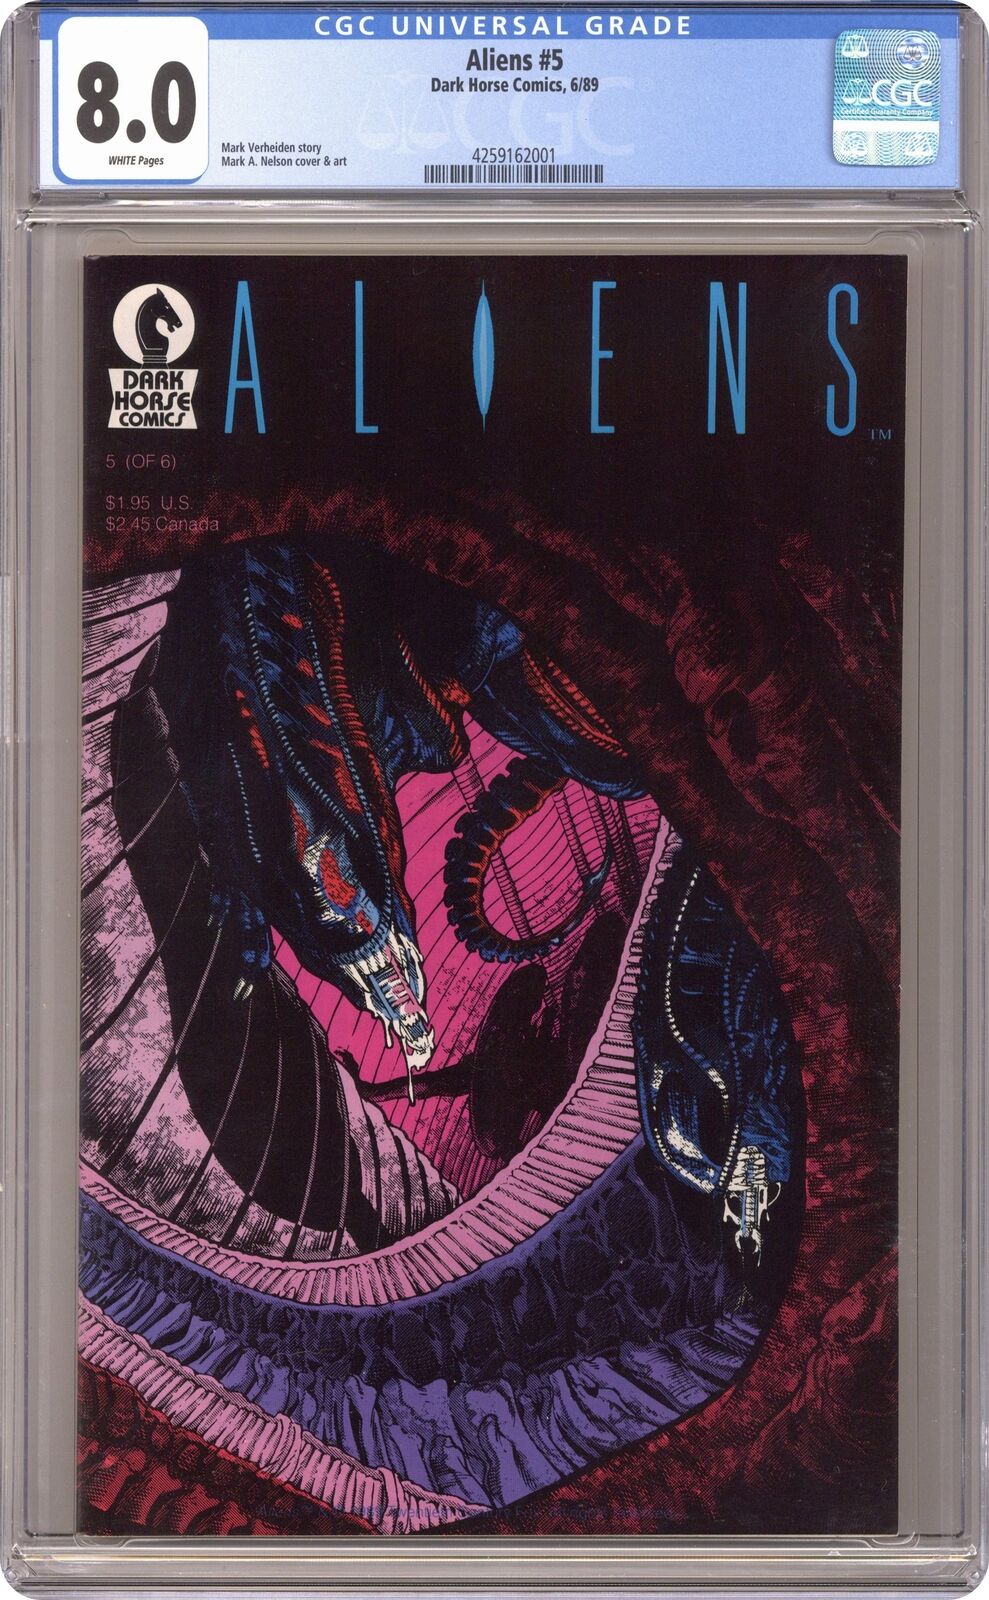 Aliens #5 CGC 8.0 1989 4259162001